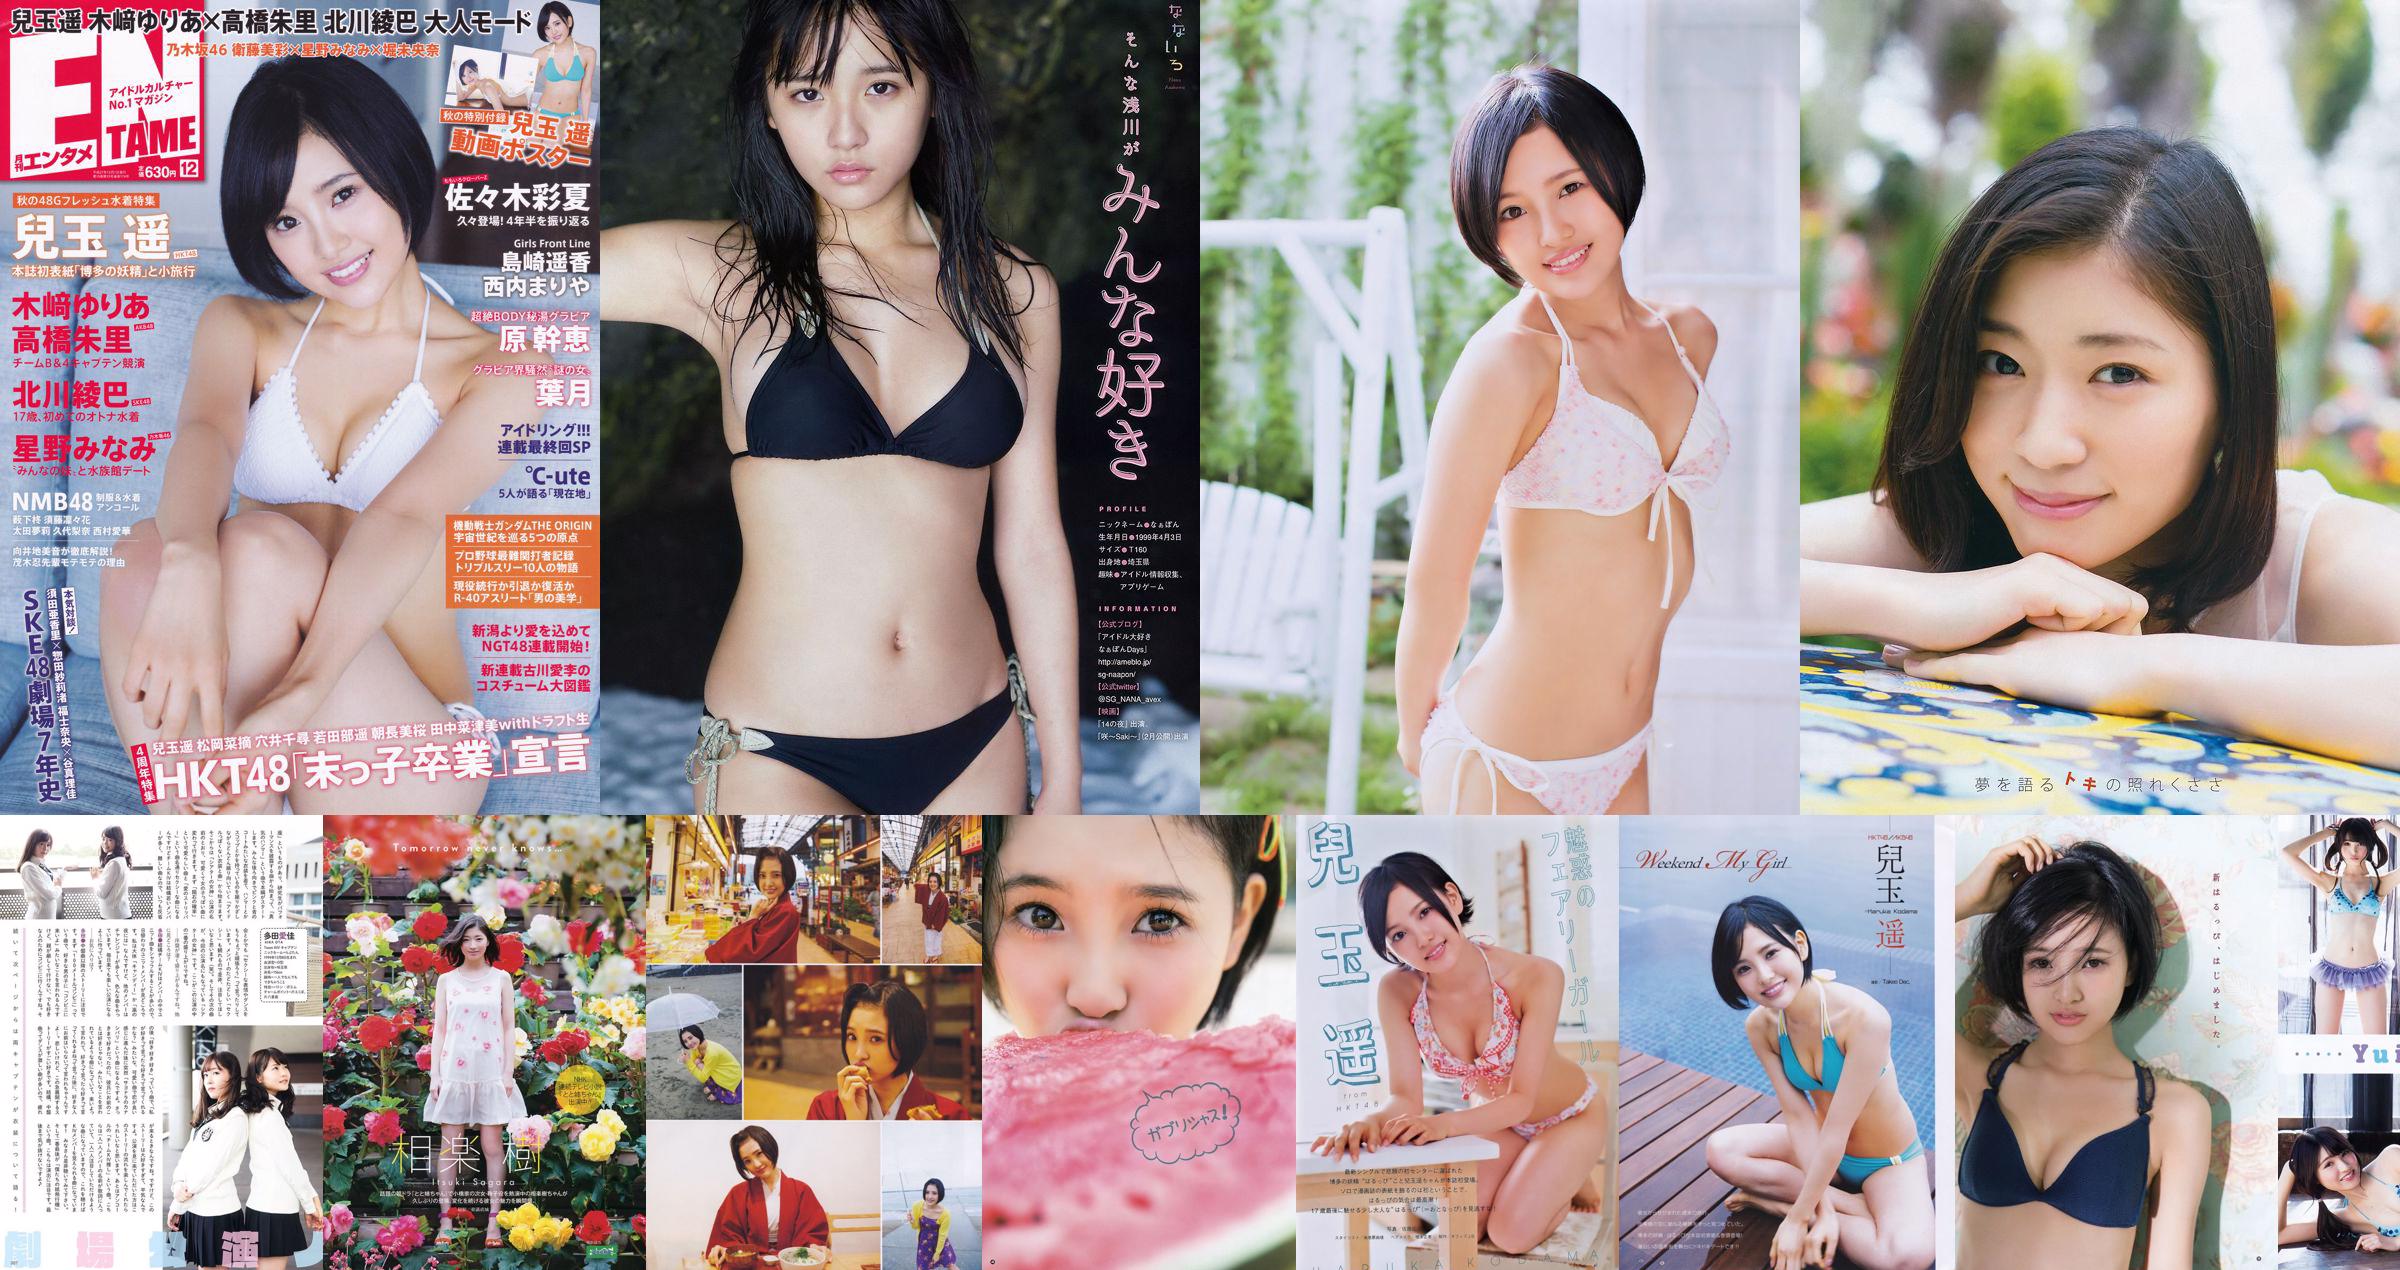 [Young Gangan] Haruka Kodama Saki Takeda 2015 No.12 Photo Palet No.11ed4f Pagina 1